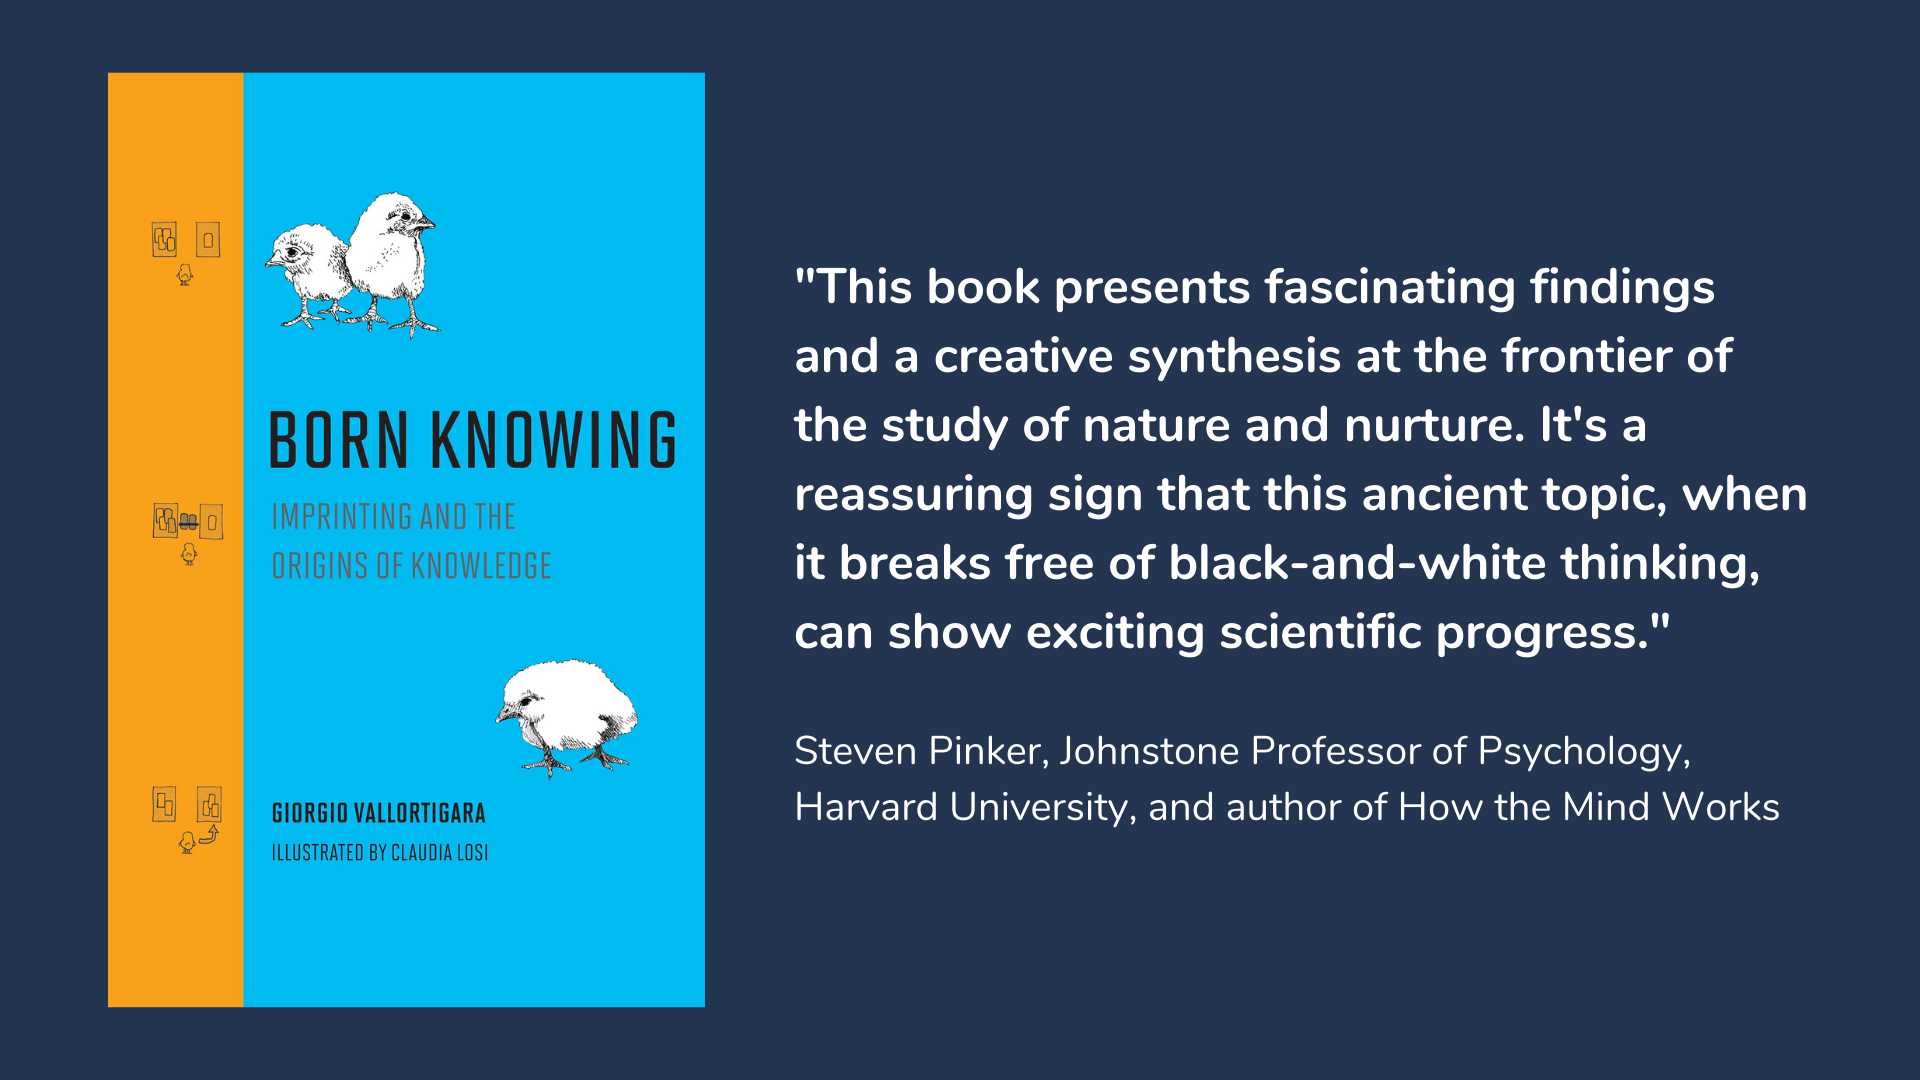 Born Knowing, book cover and description.